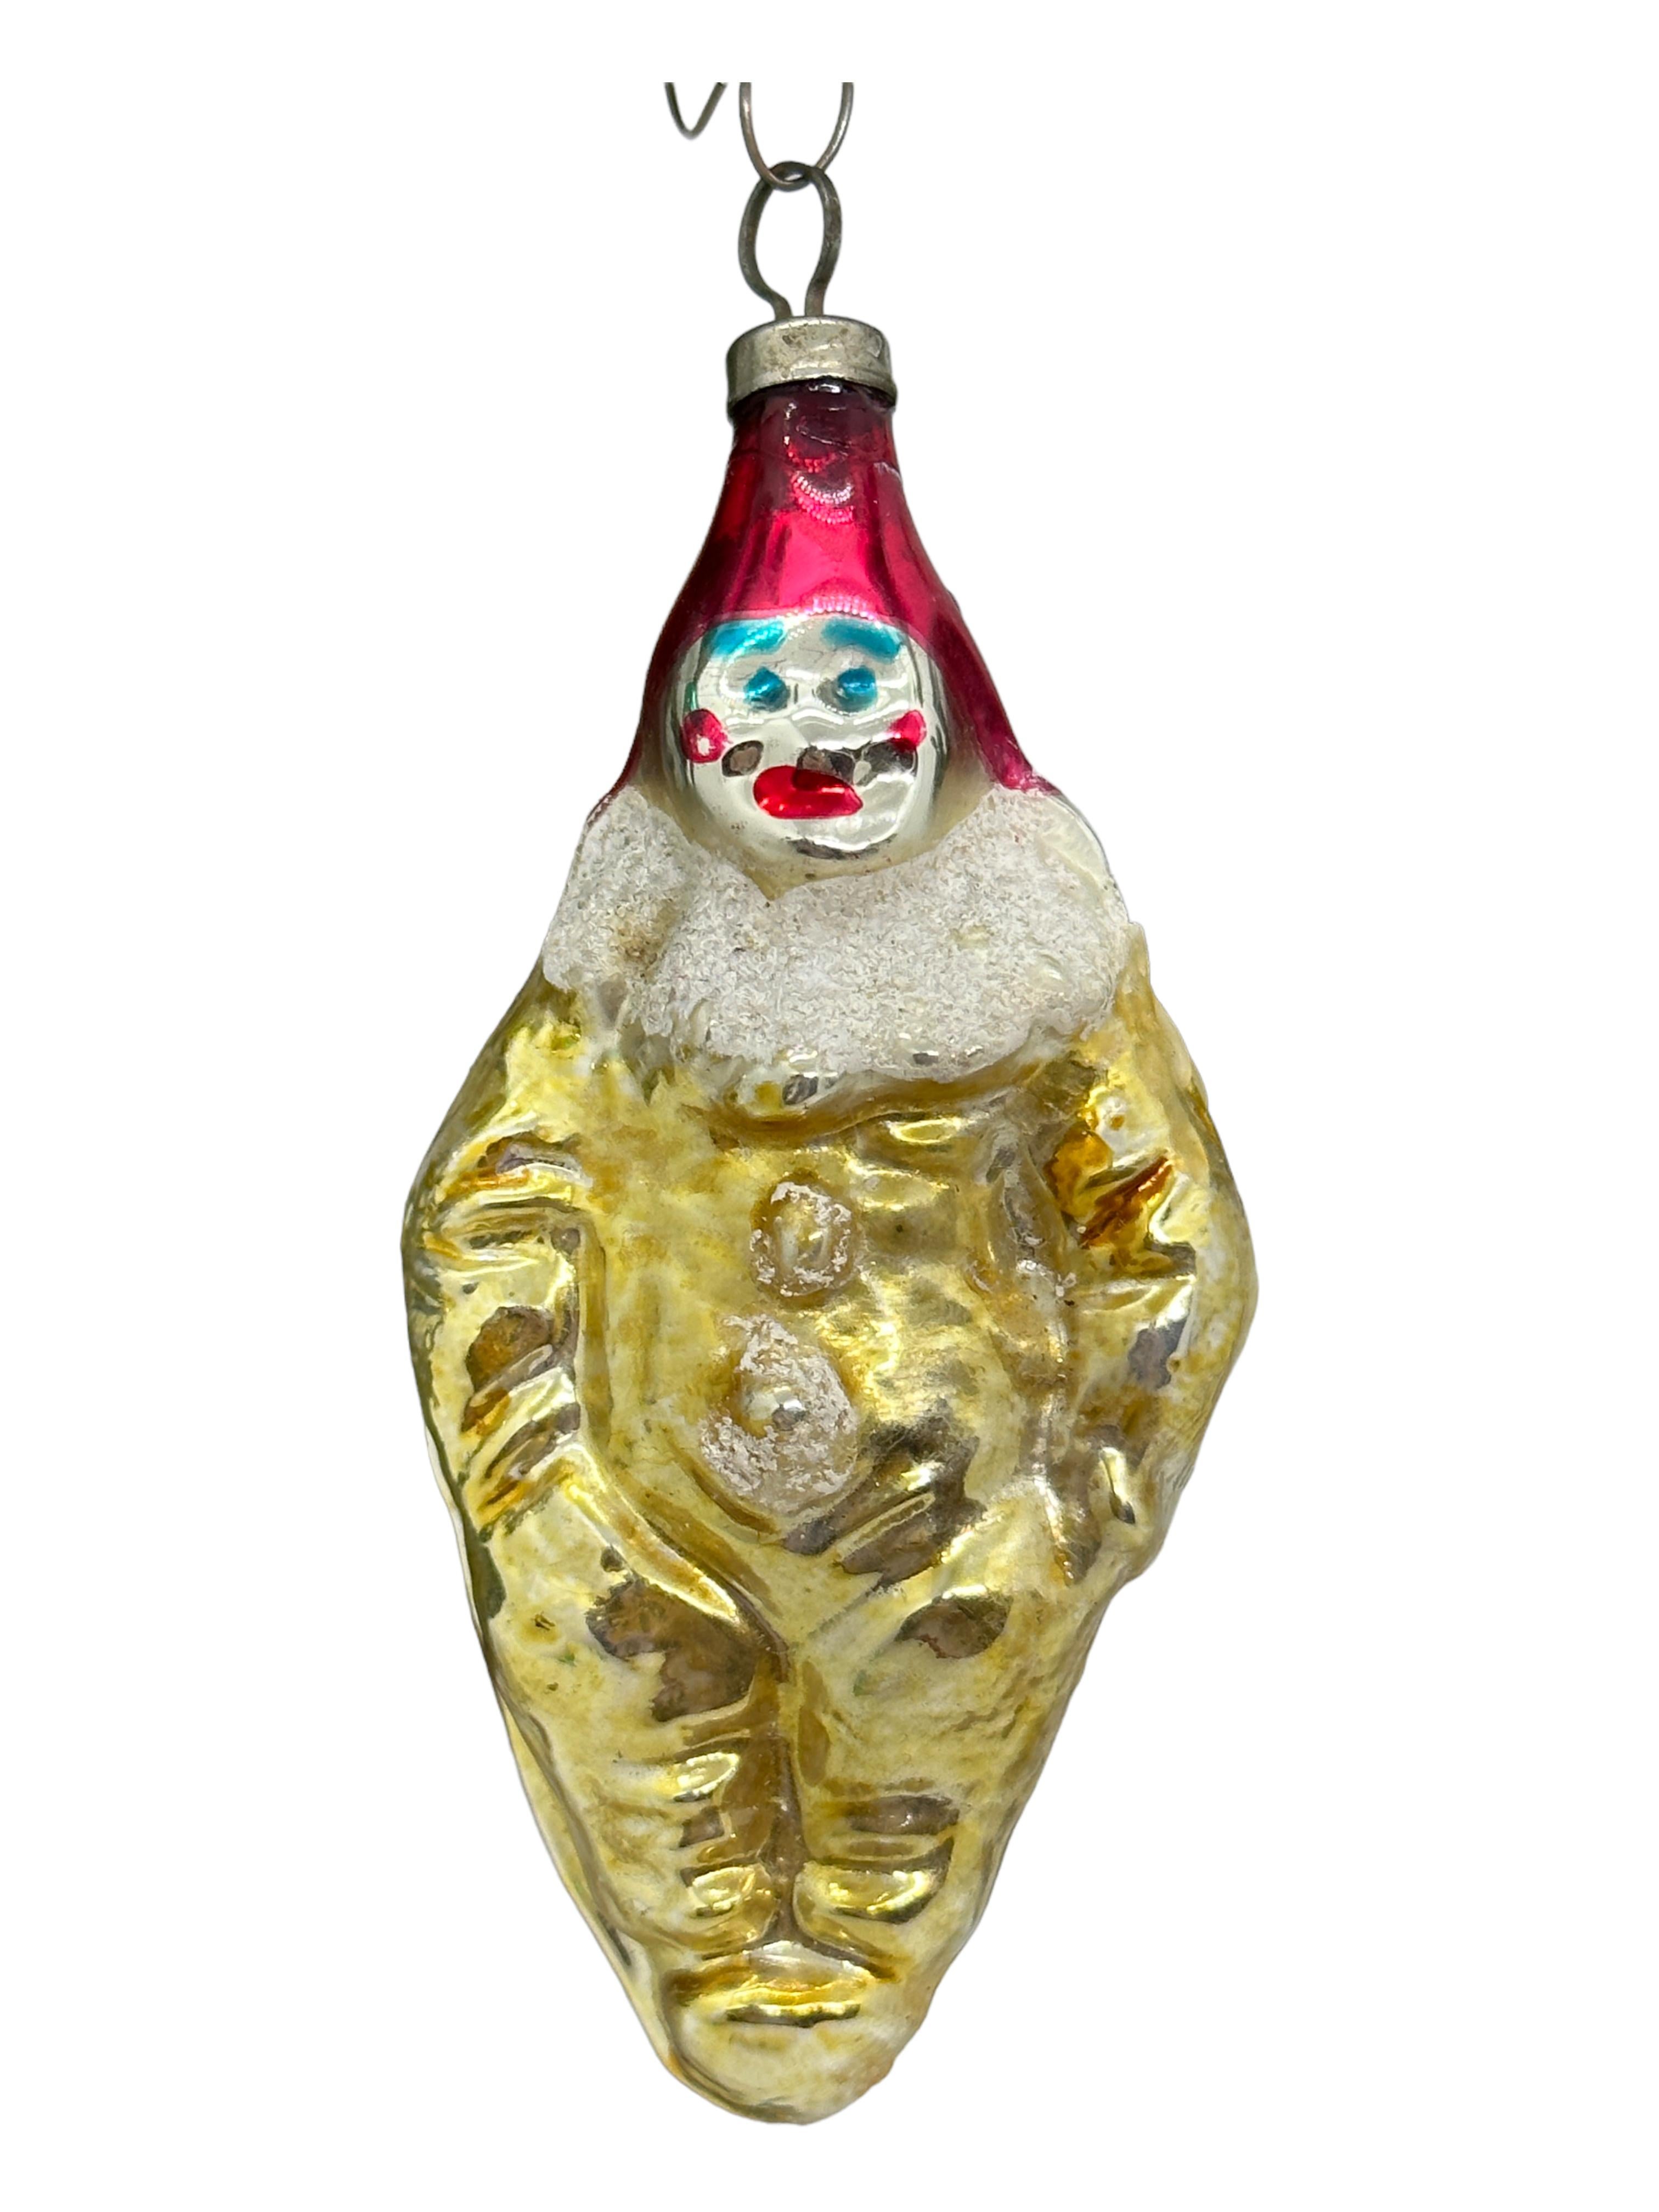 glass clown ornaments